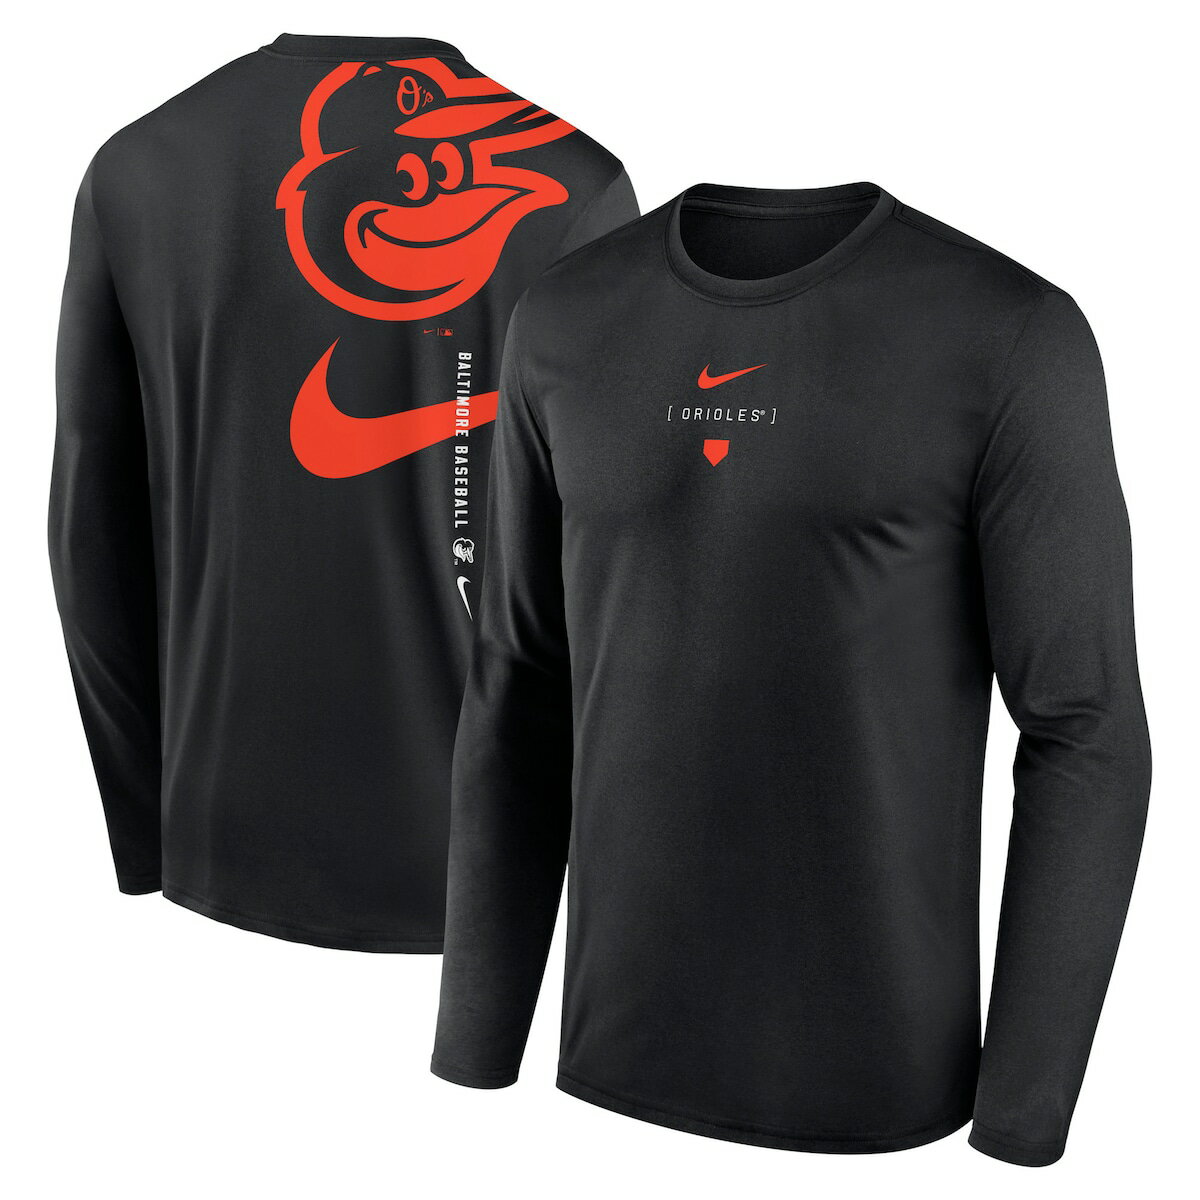 【公式グッズ】MLB オリオールズ Tシャツ Nike ナイキ メンズ ブラック (Men's Nike Large Swoosh Back Legend Tee SP24)